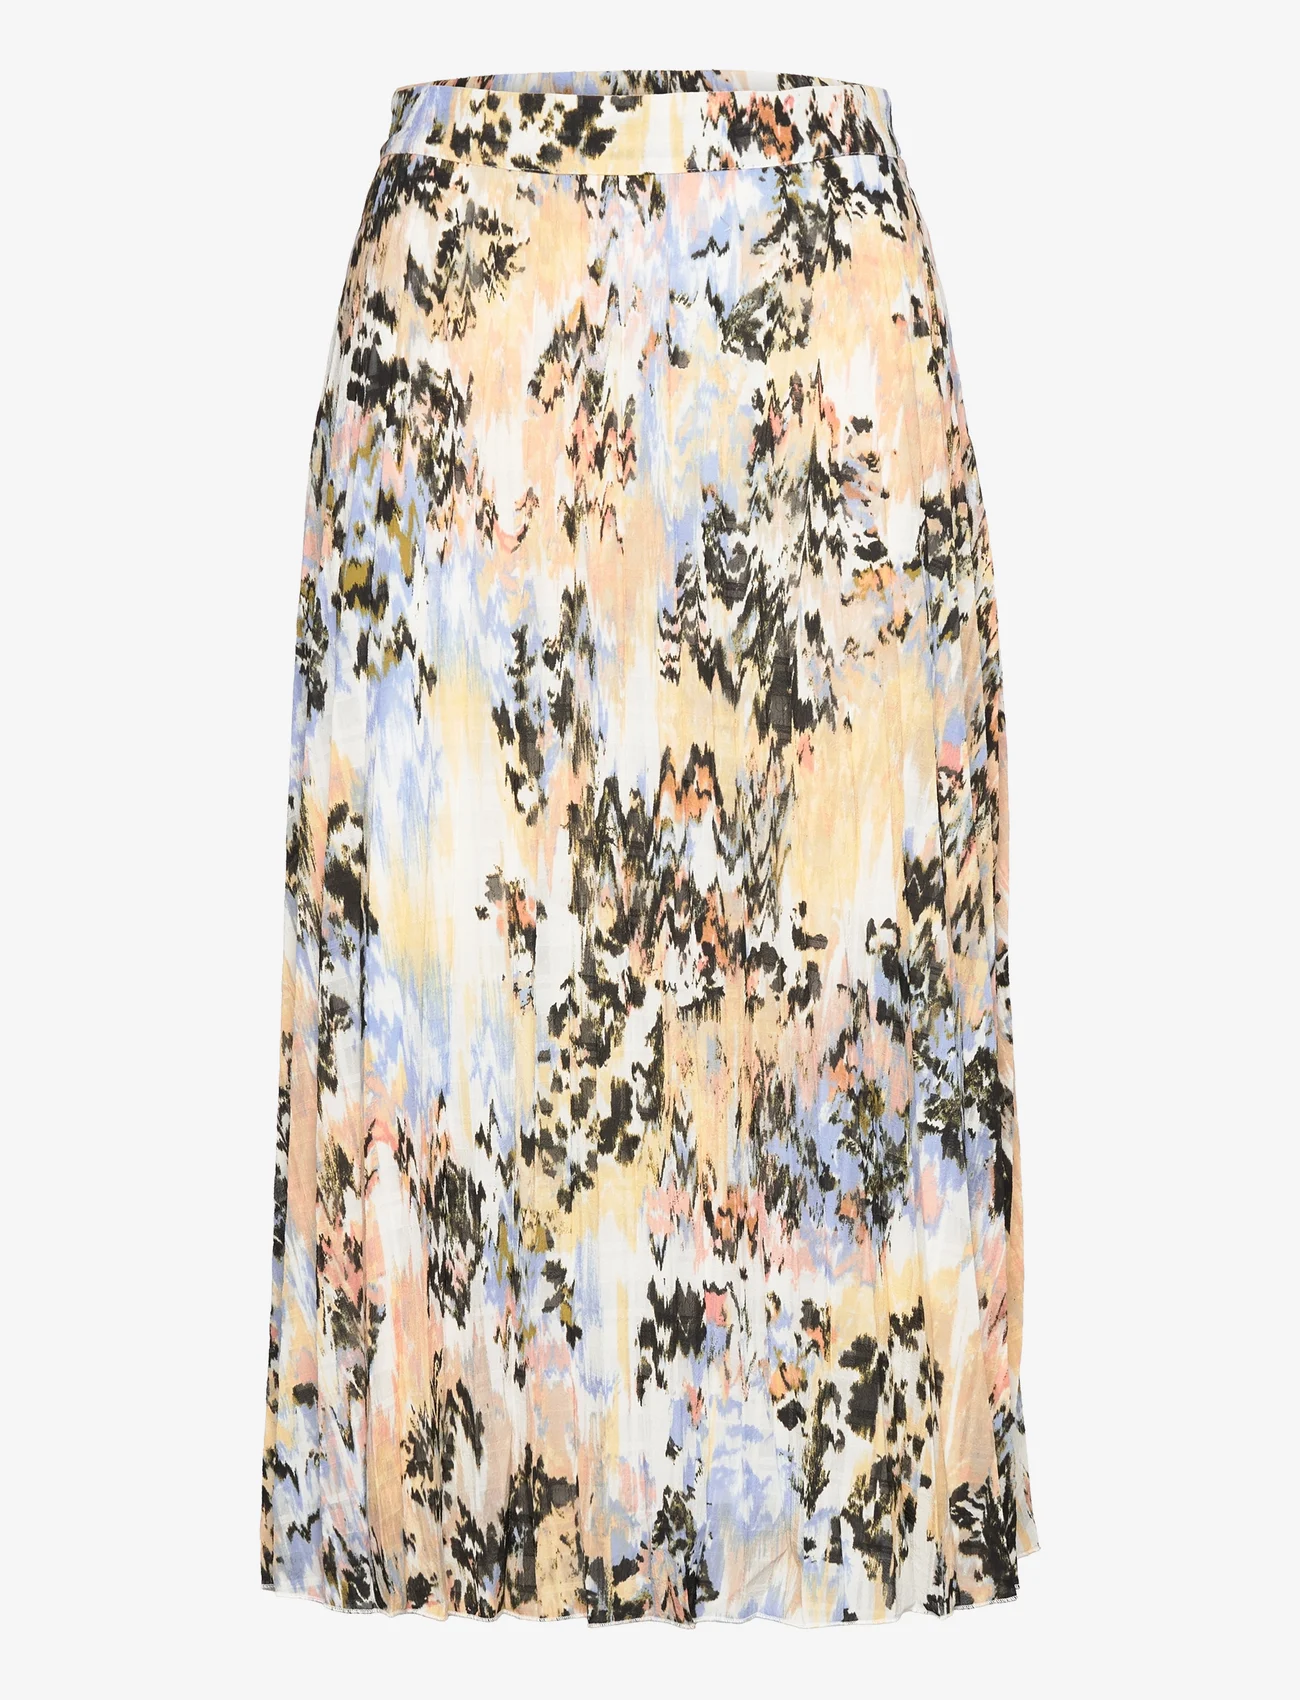 Soaked in Luxury - SLOlympia Skirt - midi kjolar - parsnip abstract print - 0